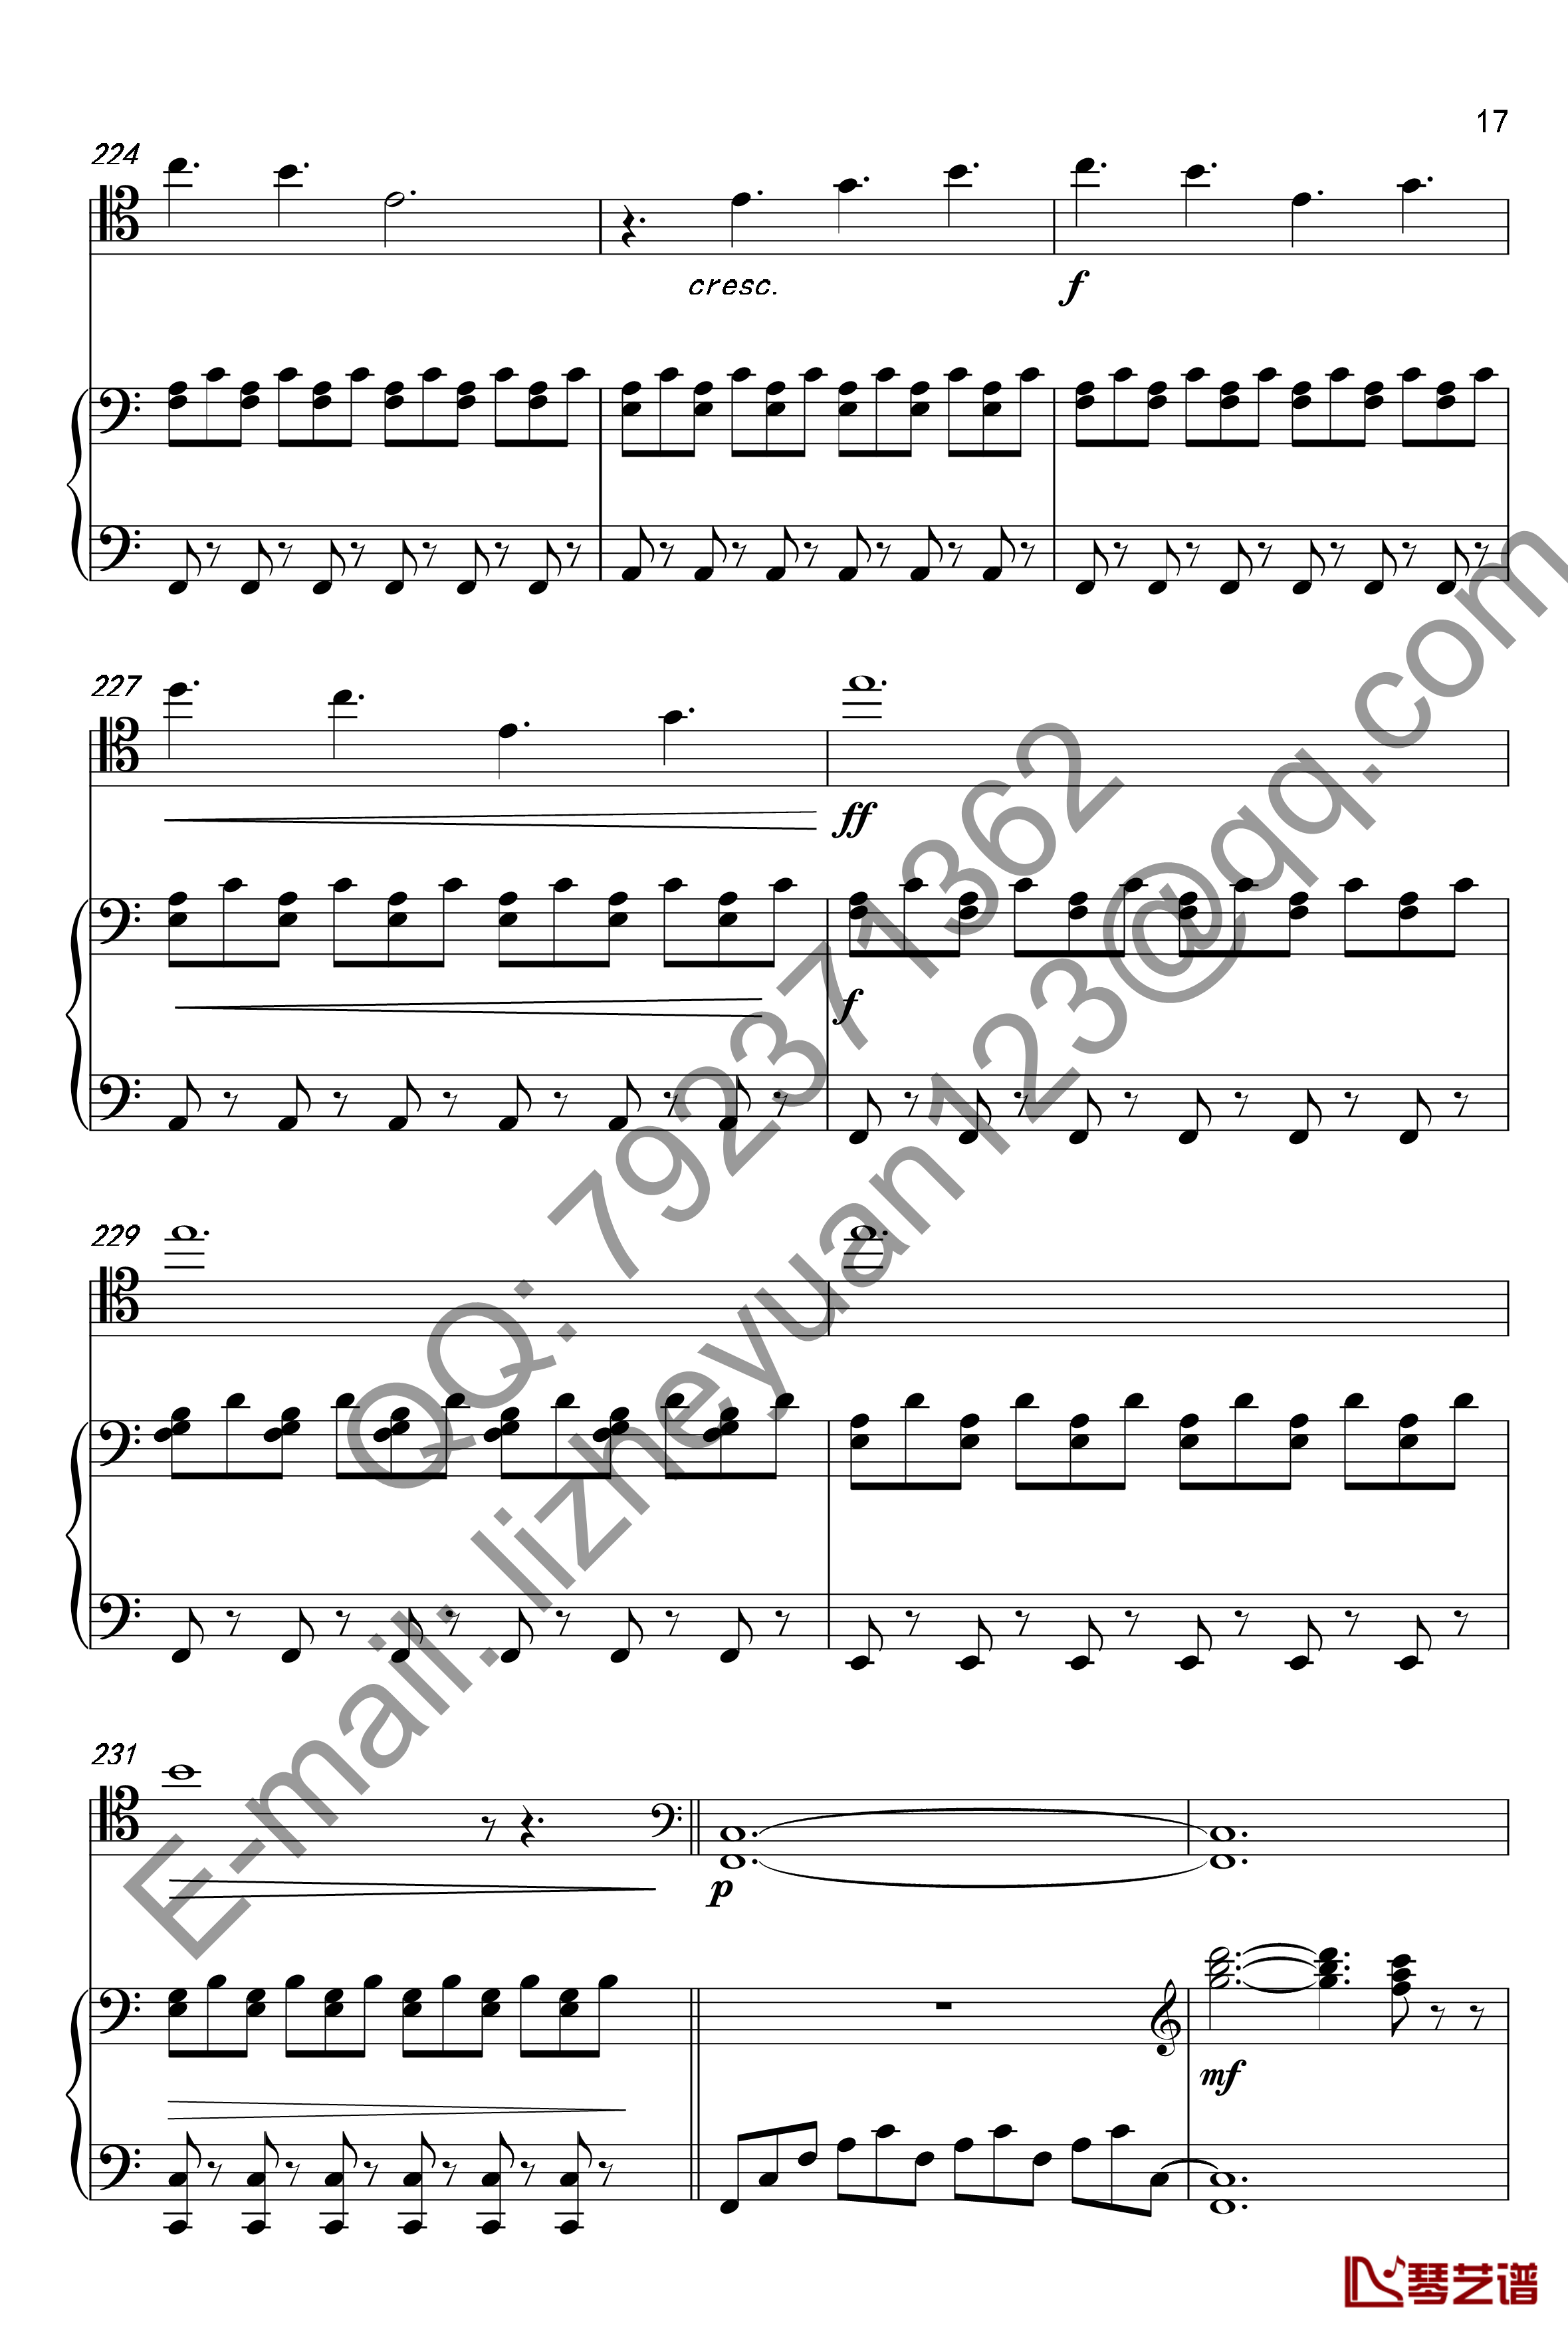 唐顿庄园主题曲钢琴谱-钢琴+大提琴-唐顿庄园17